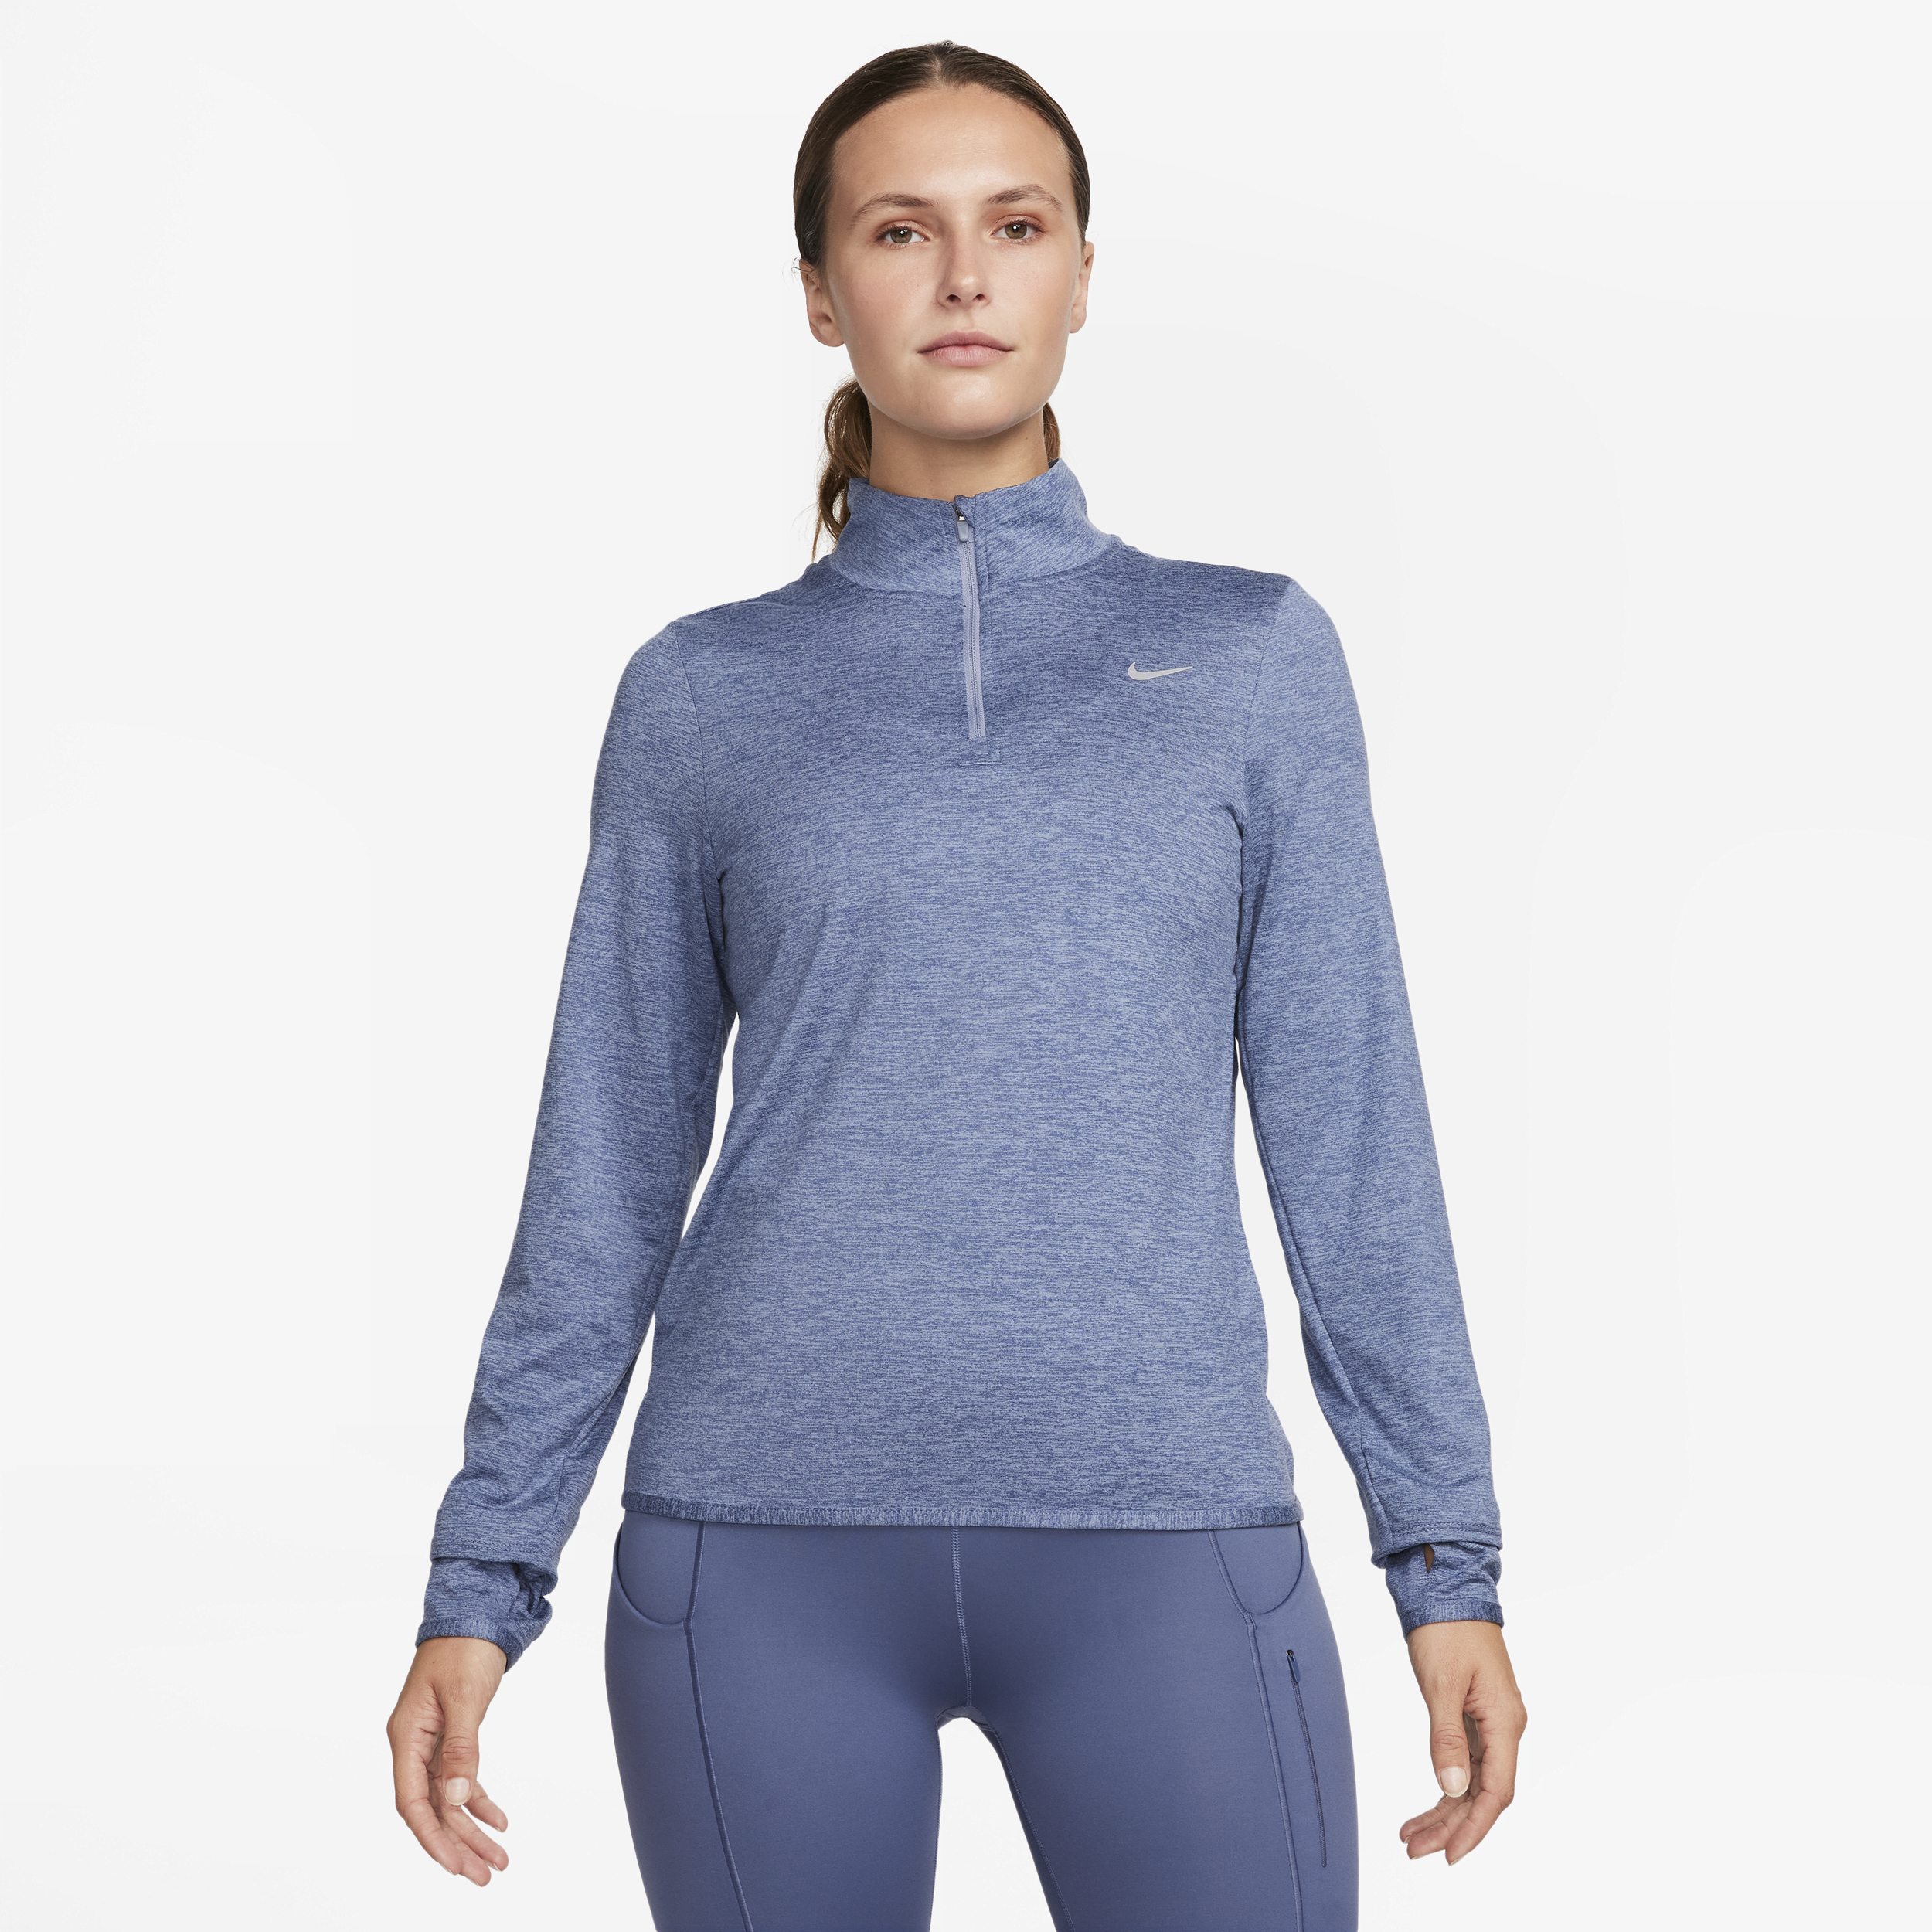 Nike Swift hardlooptop met korte rits en UV-bescherming voor dames - Blauw